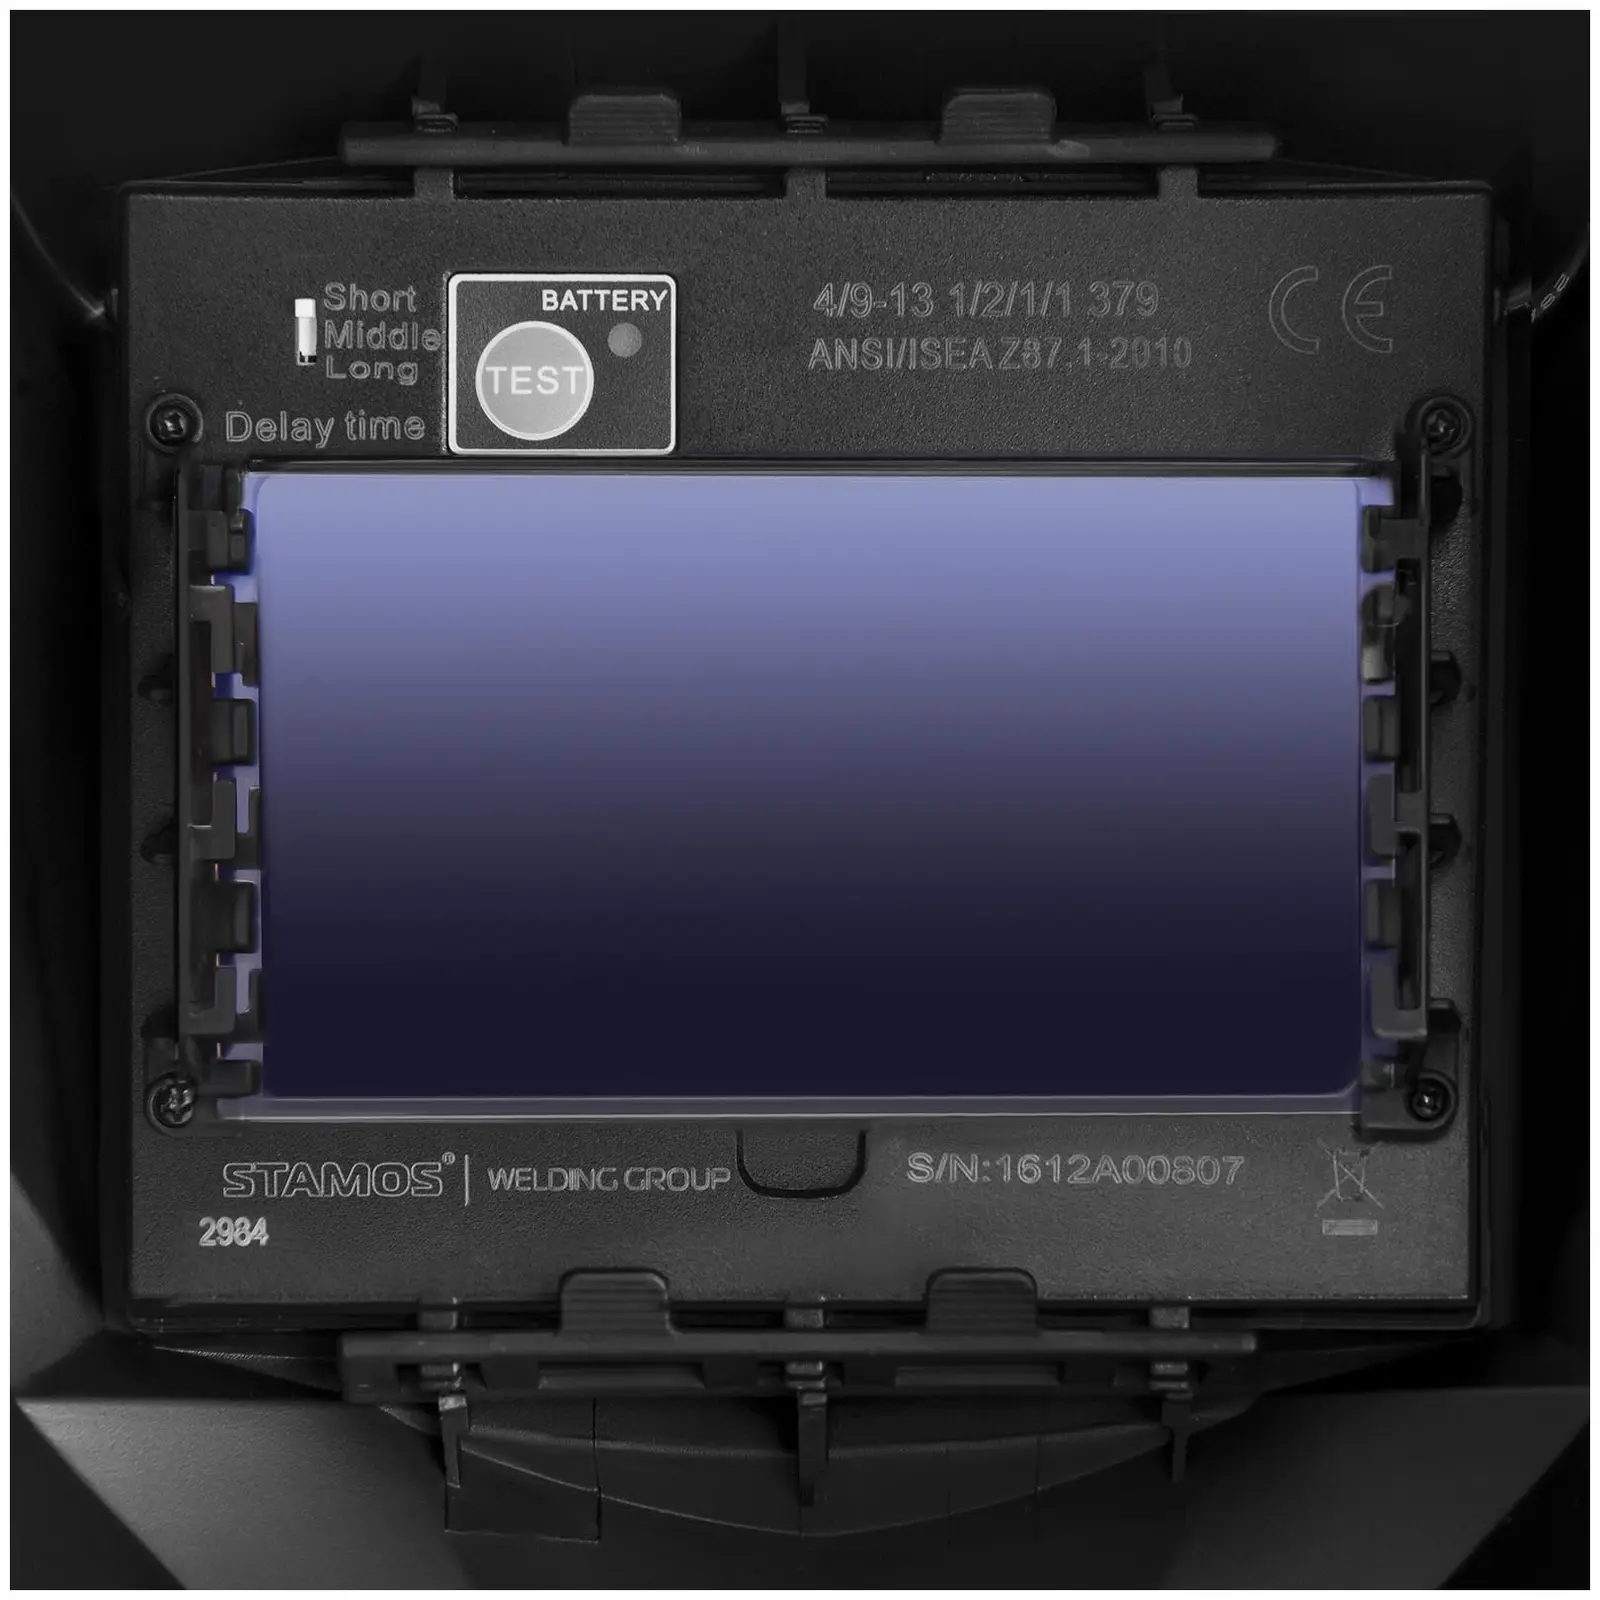 Plasmaskärare - 55 A - 230 V - kontakttändning + Svetshjälm – Firestarter 500 – Advanced Series